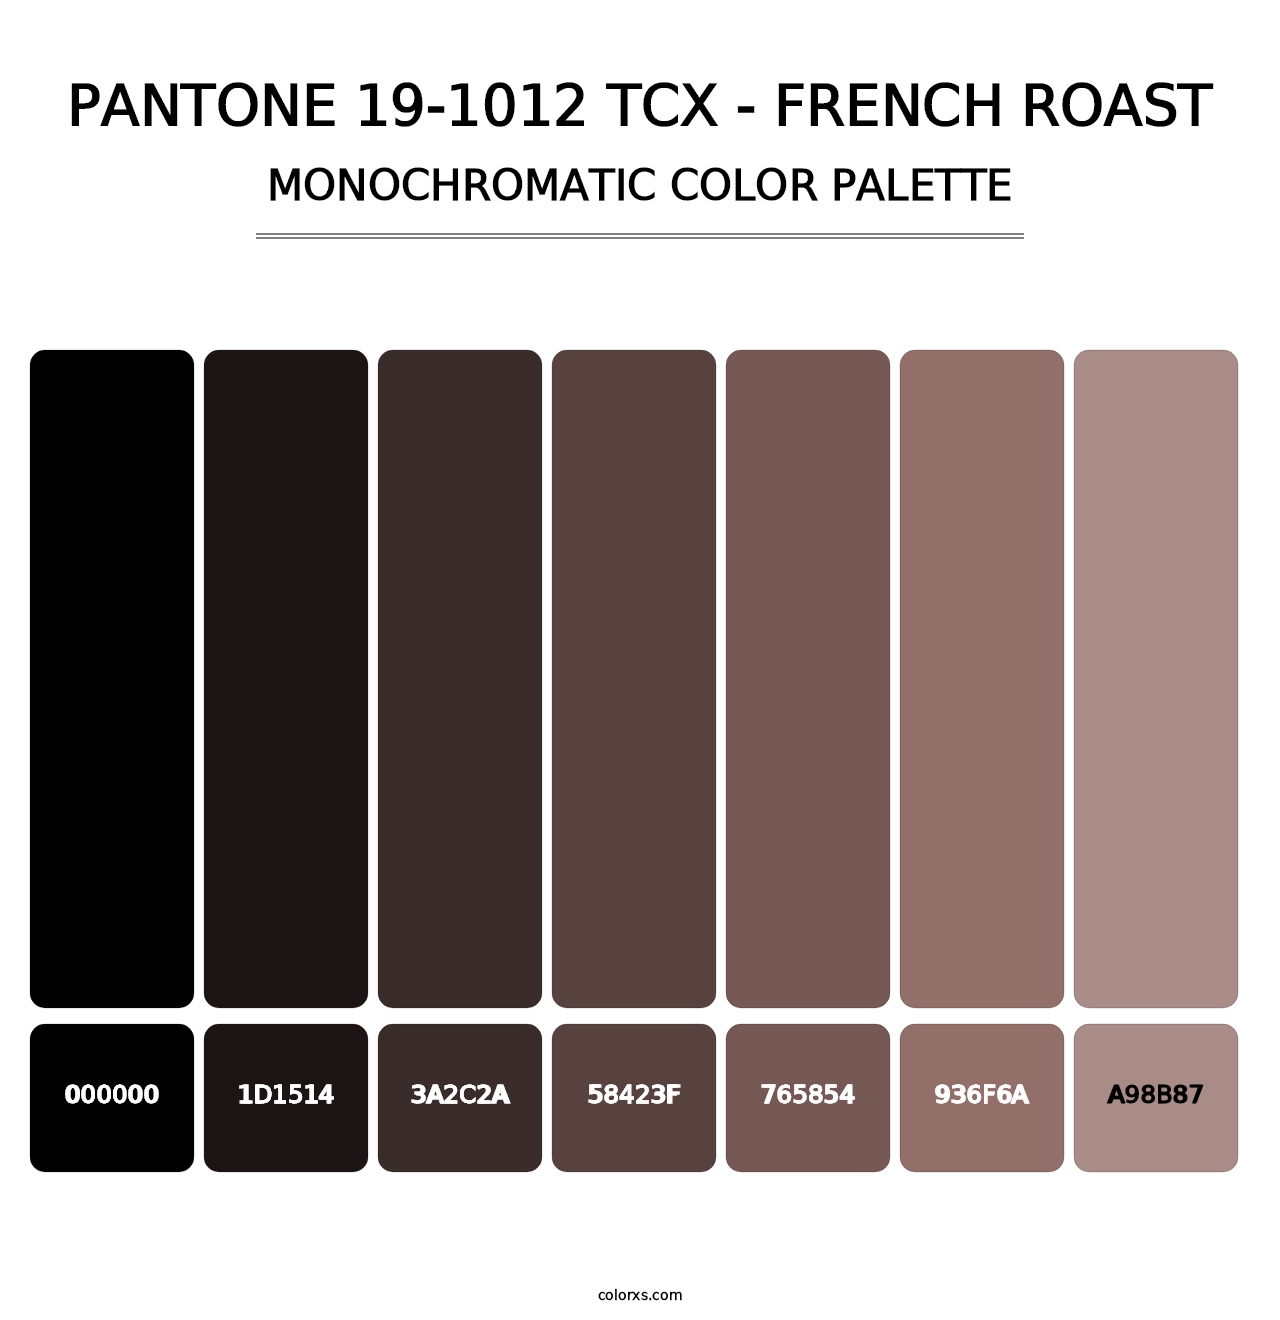 PANTONE 19-1012 TCX - French Roast - Monochromatic Color Palette